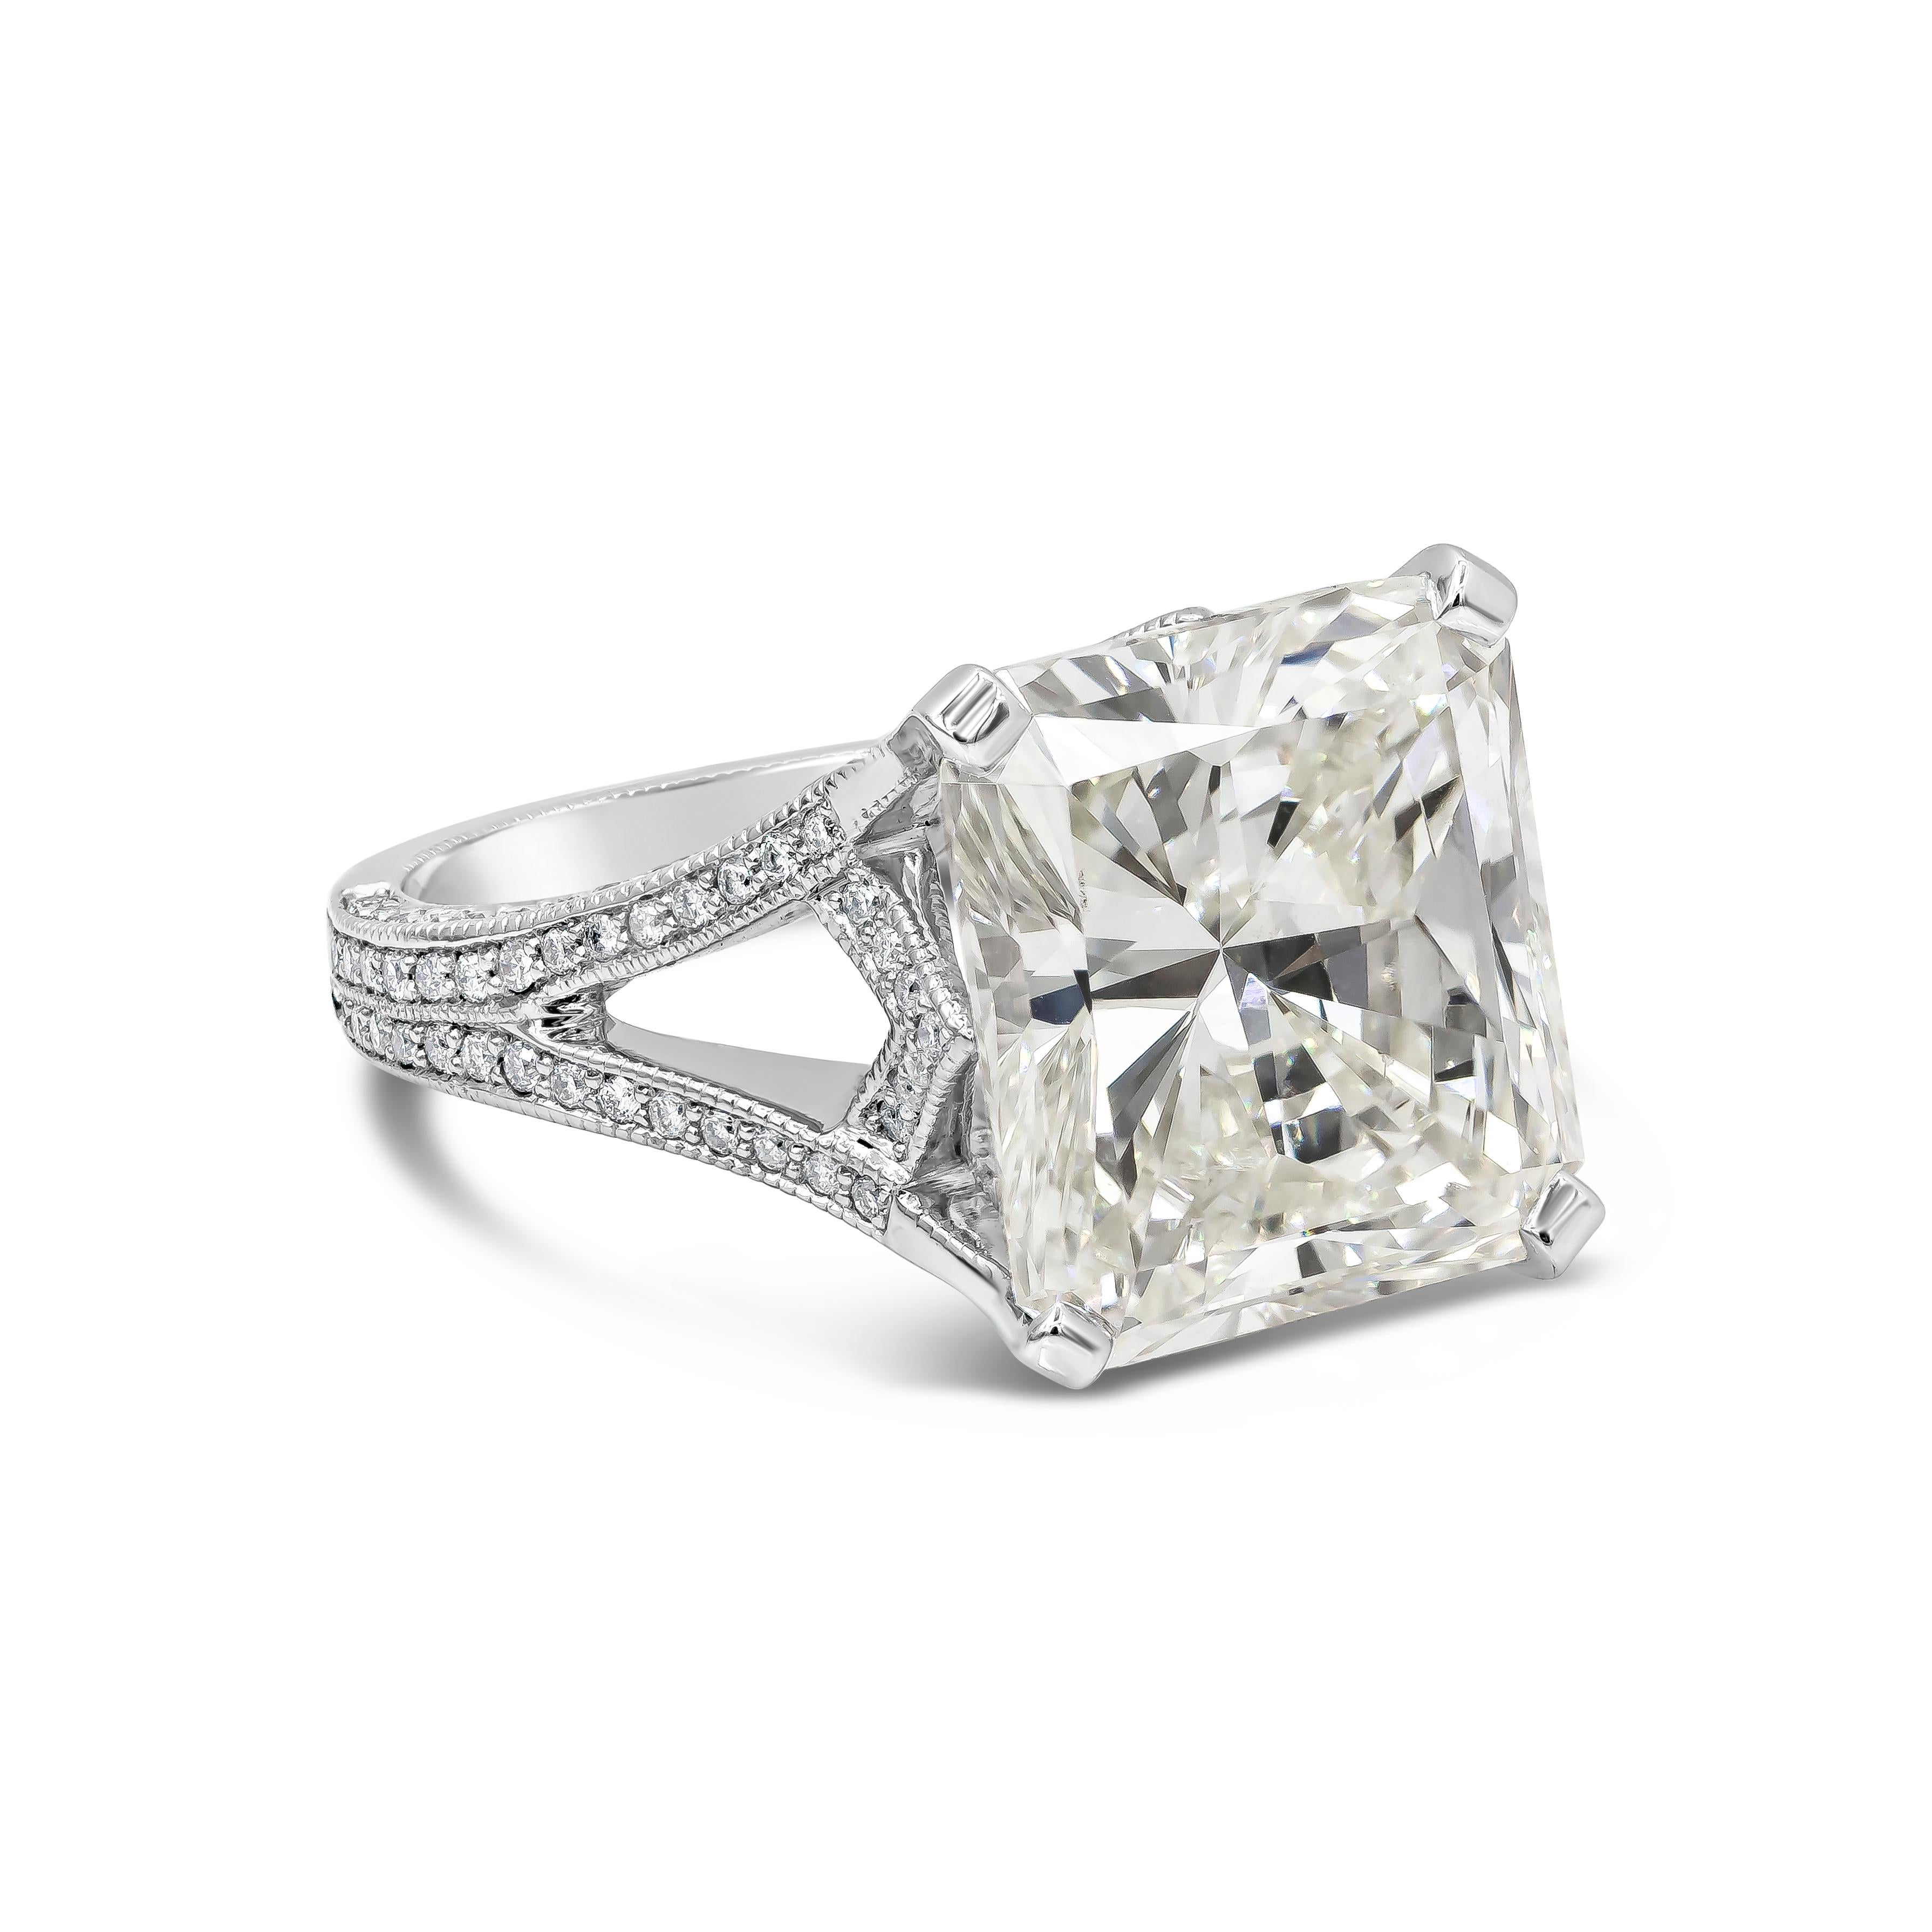 Mit einem GIA-zertifizierten 10,65-Karat-Diamanten im Strahlenschliff, Farbe K und Reinheit Si1. Der Ring ist mit einem komplizierten doppelten Schaft versehen, der nach der Hälfte des Rings in einen einzelnen Schaft übergeht. Runde Diamanten mit